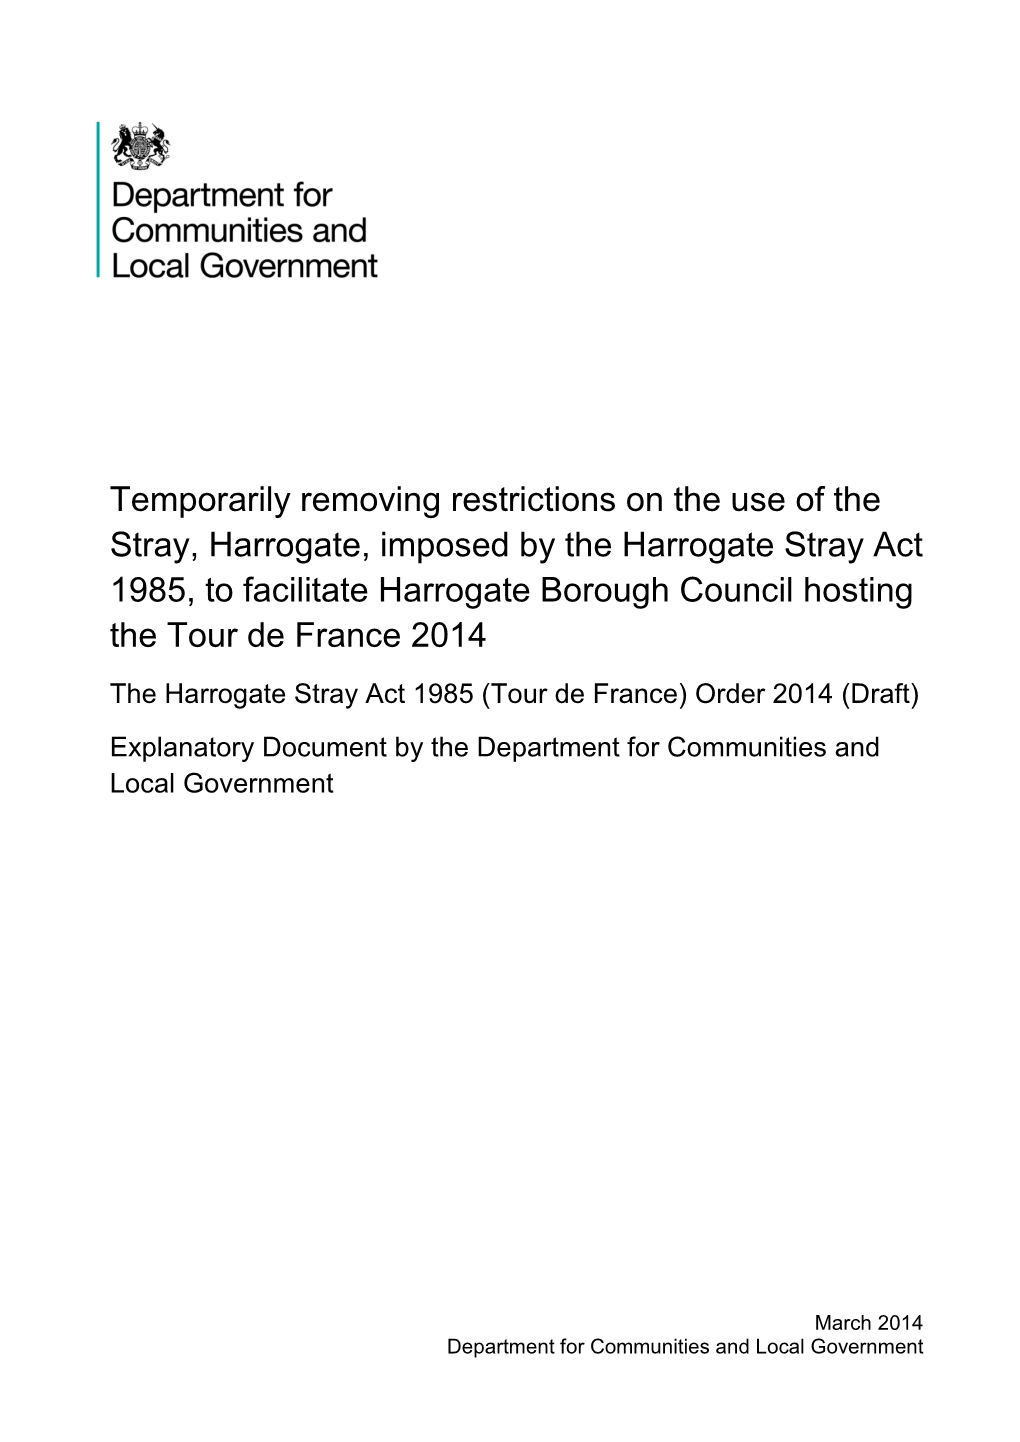 Harrogate Stray Act 1985